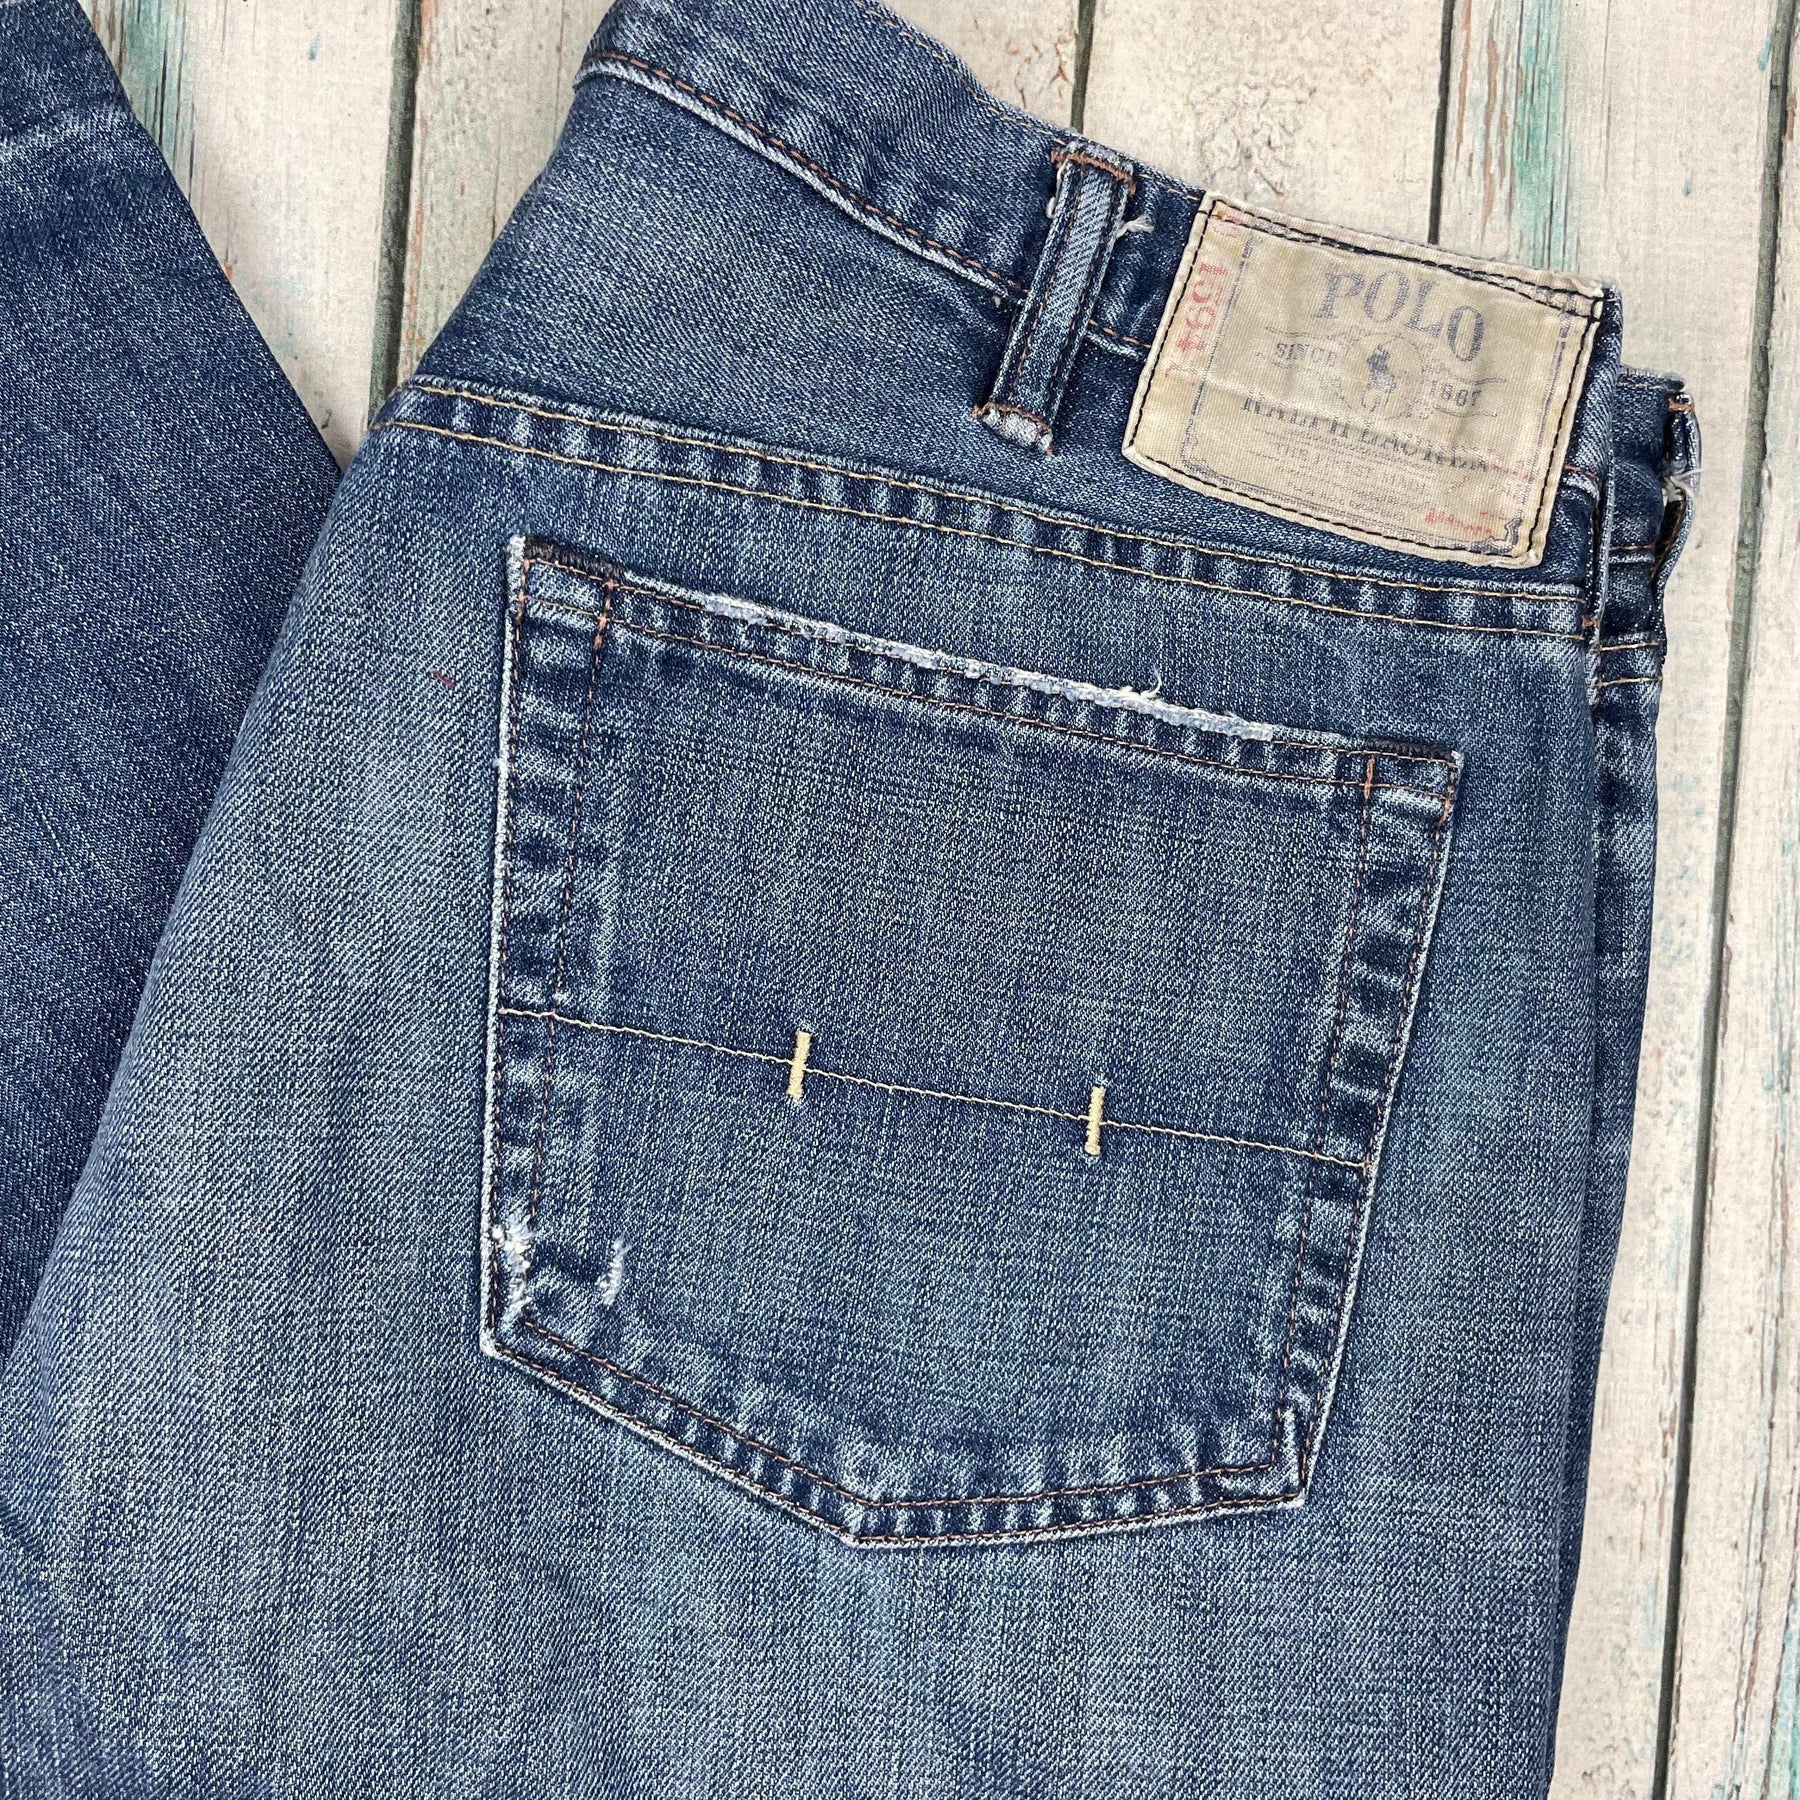 Polo Ralph Lauren Men's Jeans